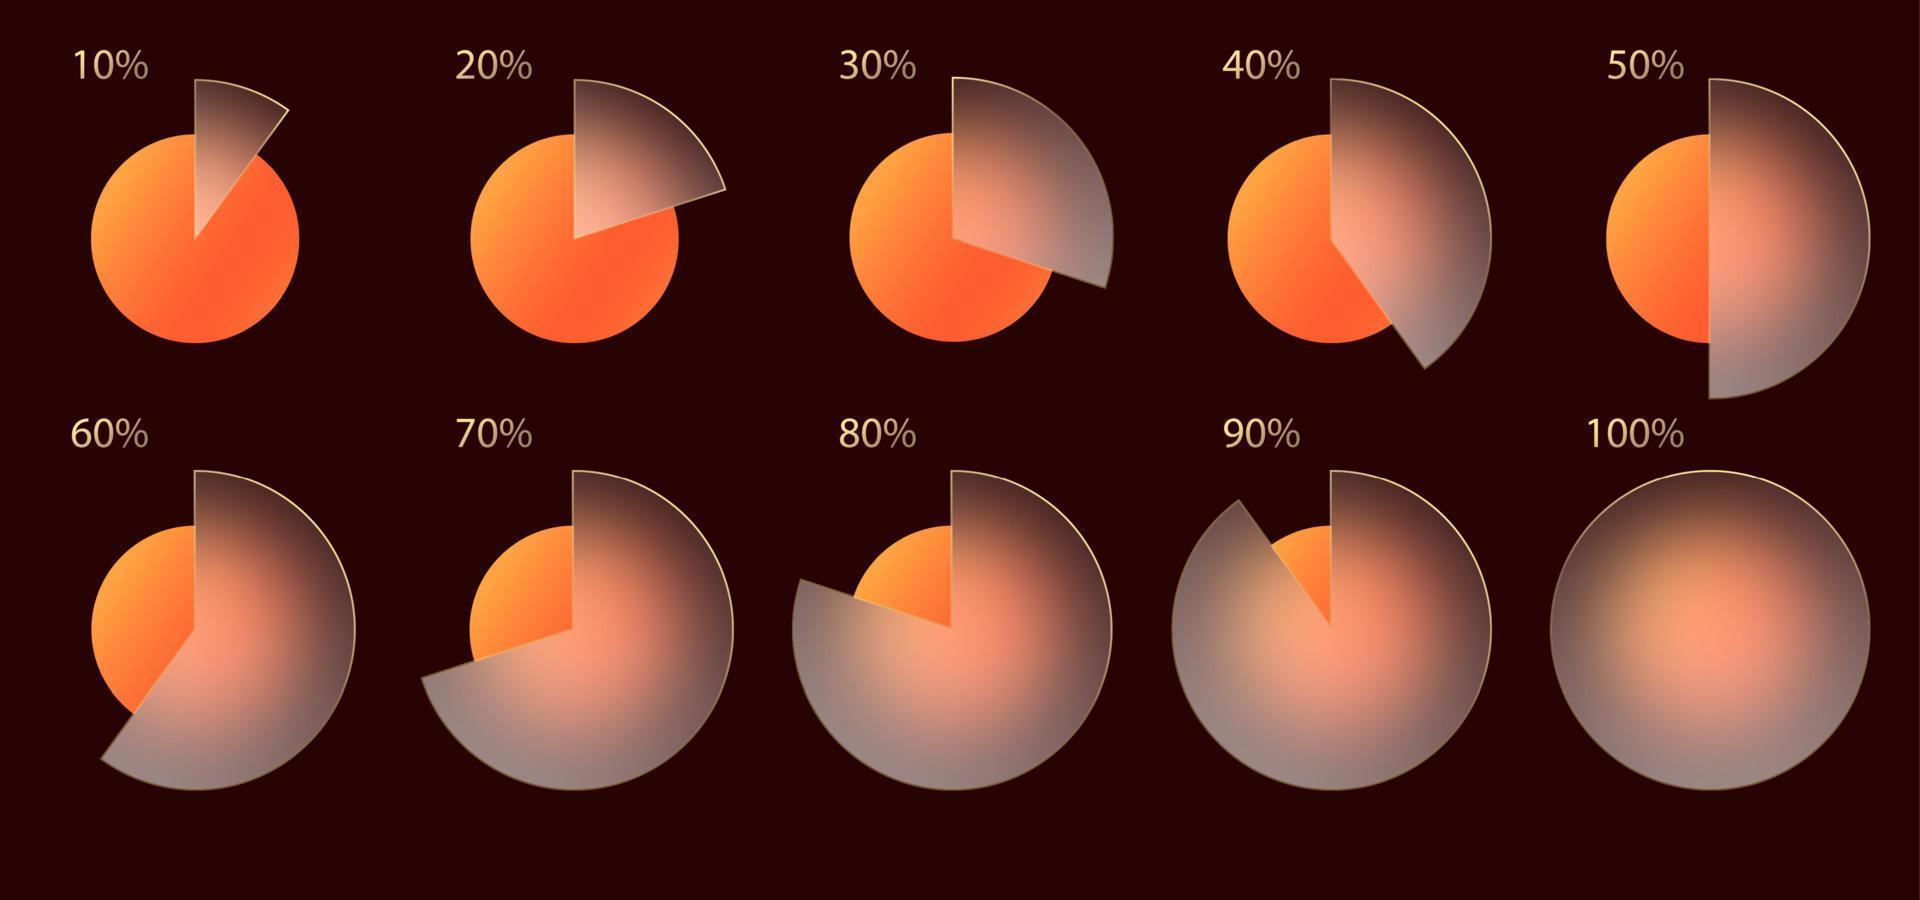 effetto morfismo vetroso. set di percentuale di infografica grafico acrilico satinato trasparente. cerchi sfumati giallo arancio su sfondo marrone scuro. forma realistica in plexiglass opaco con morfismo di vetro. vettore